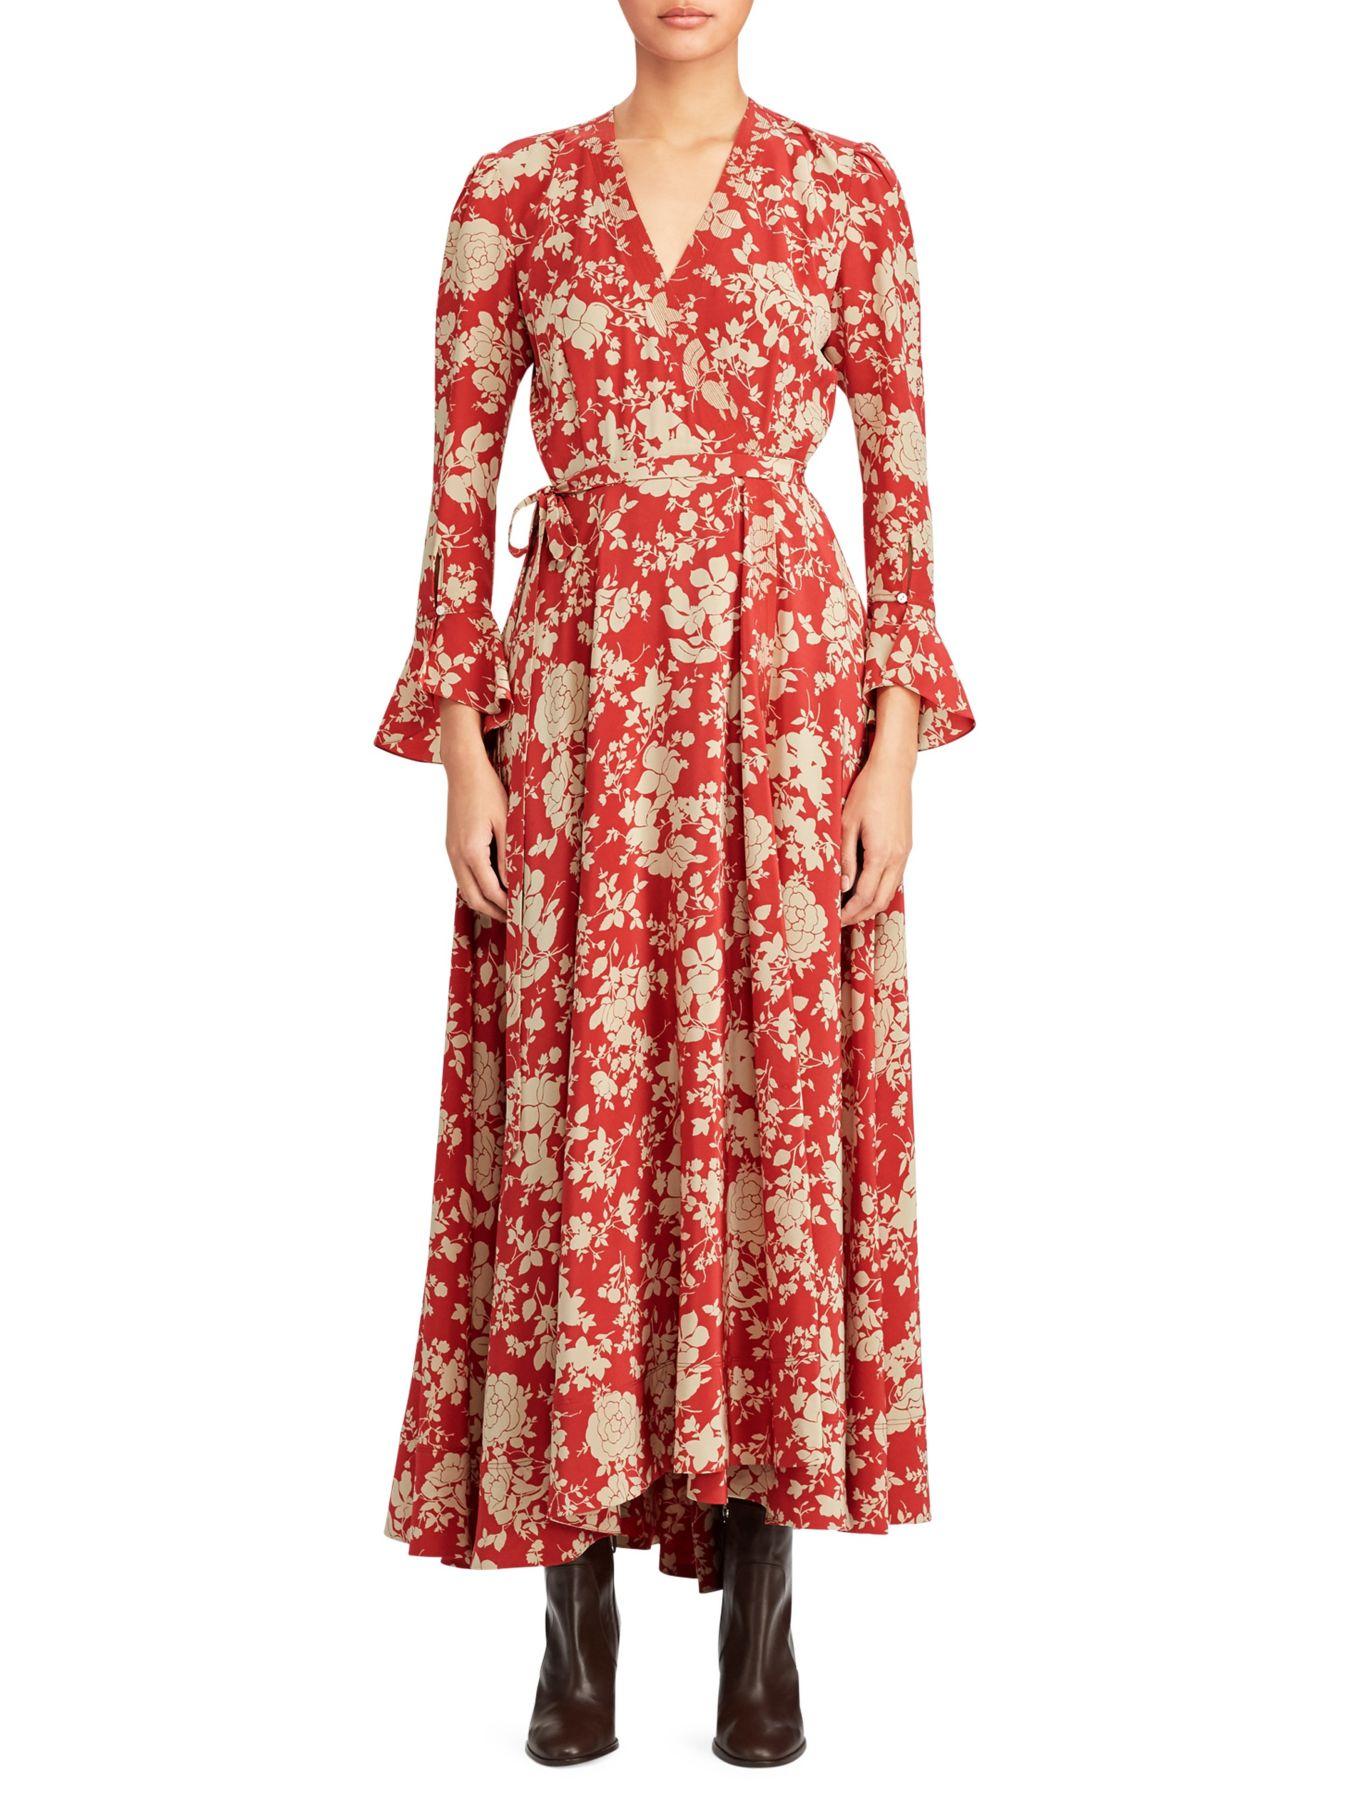 Aprender acerca 74+ imagen polo ralph lauren floral wrap dress ...